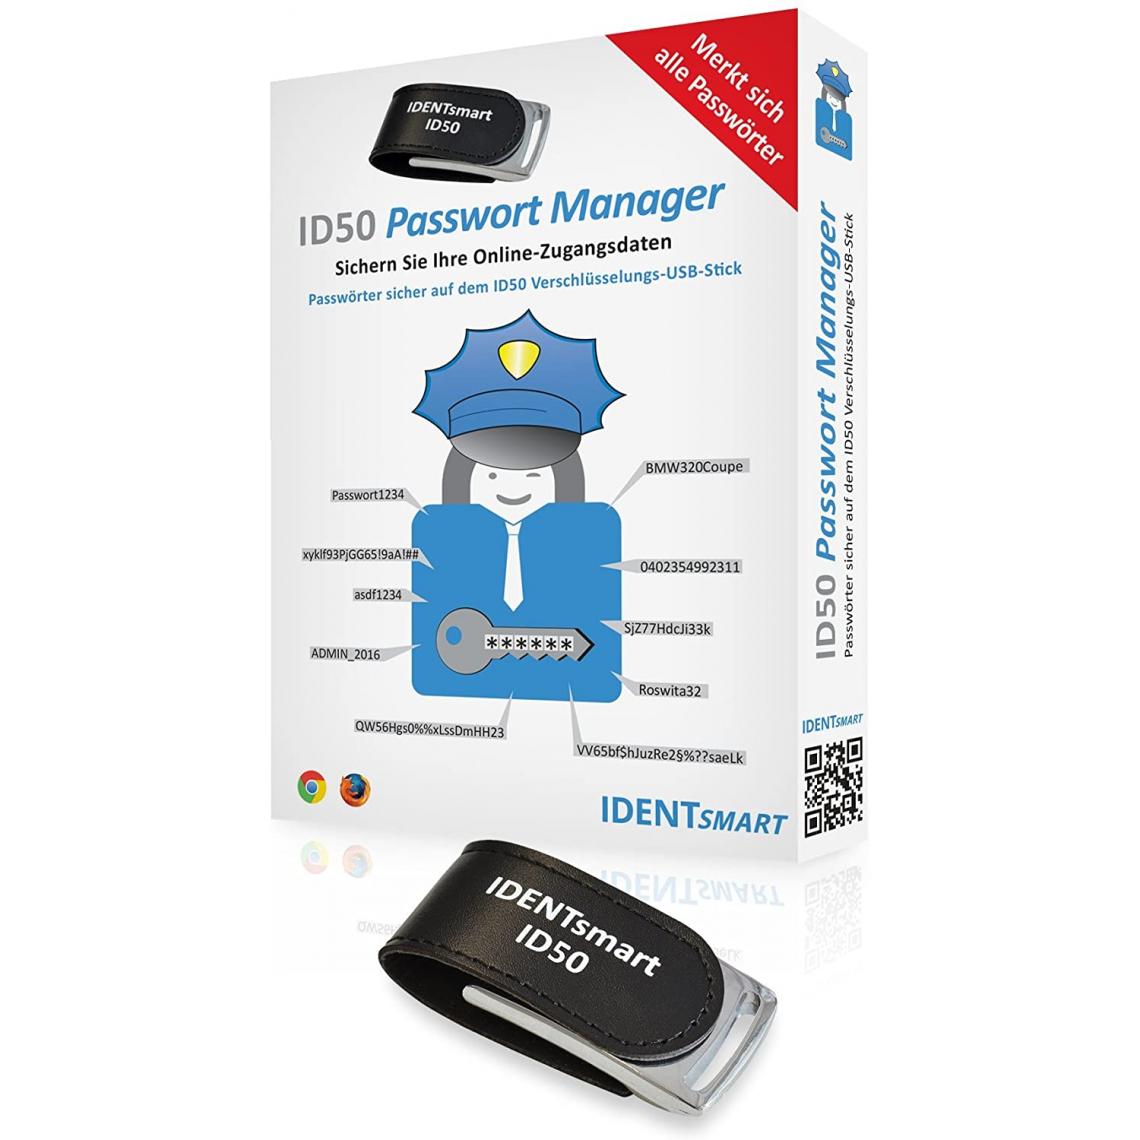 Inconnu - identsm Art ID50 mot de passe Manager Win - Accessoires Boitier PC